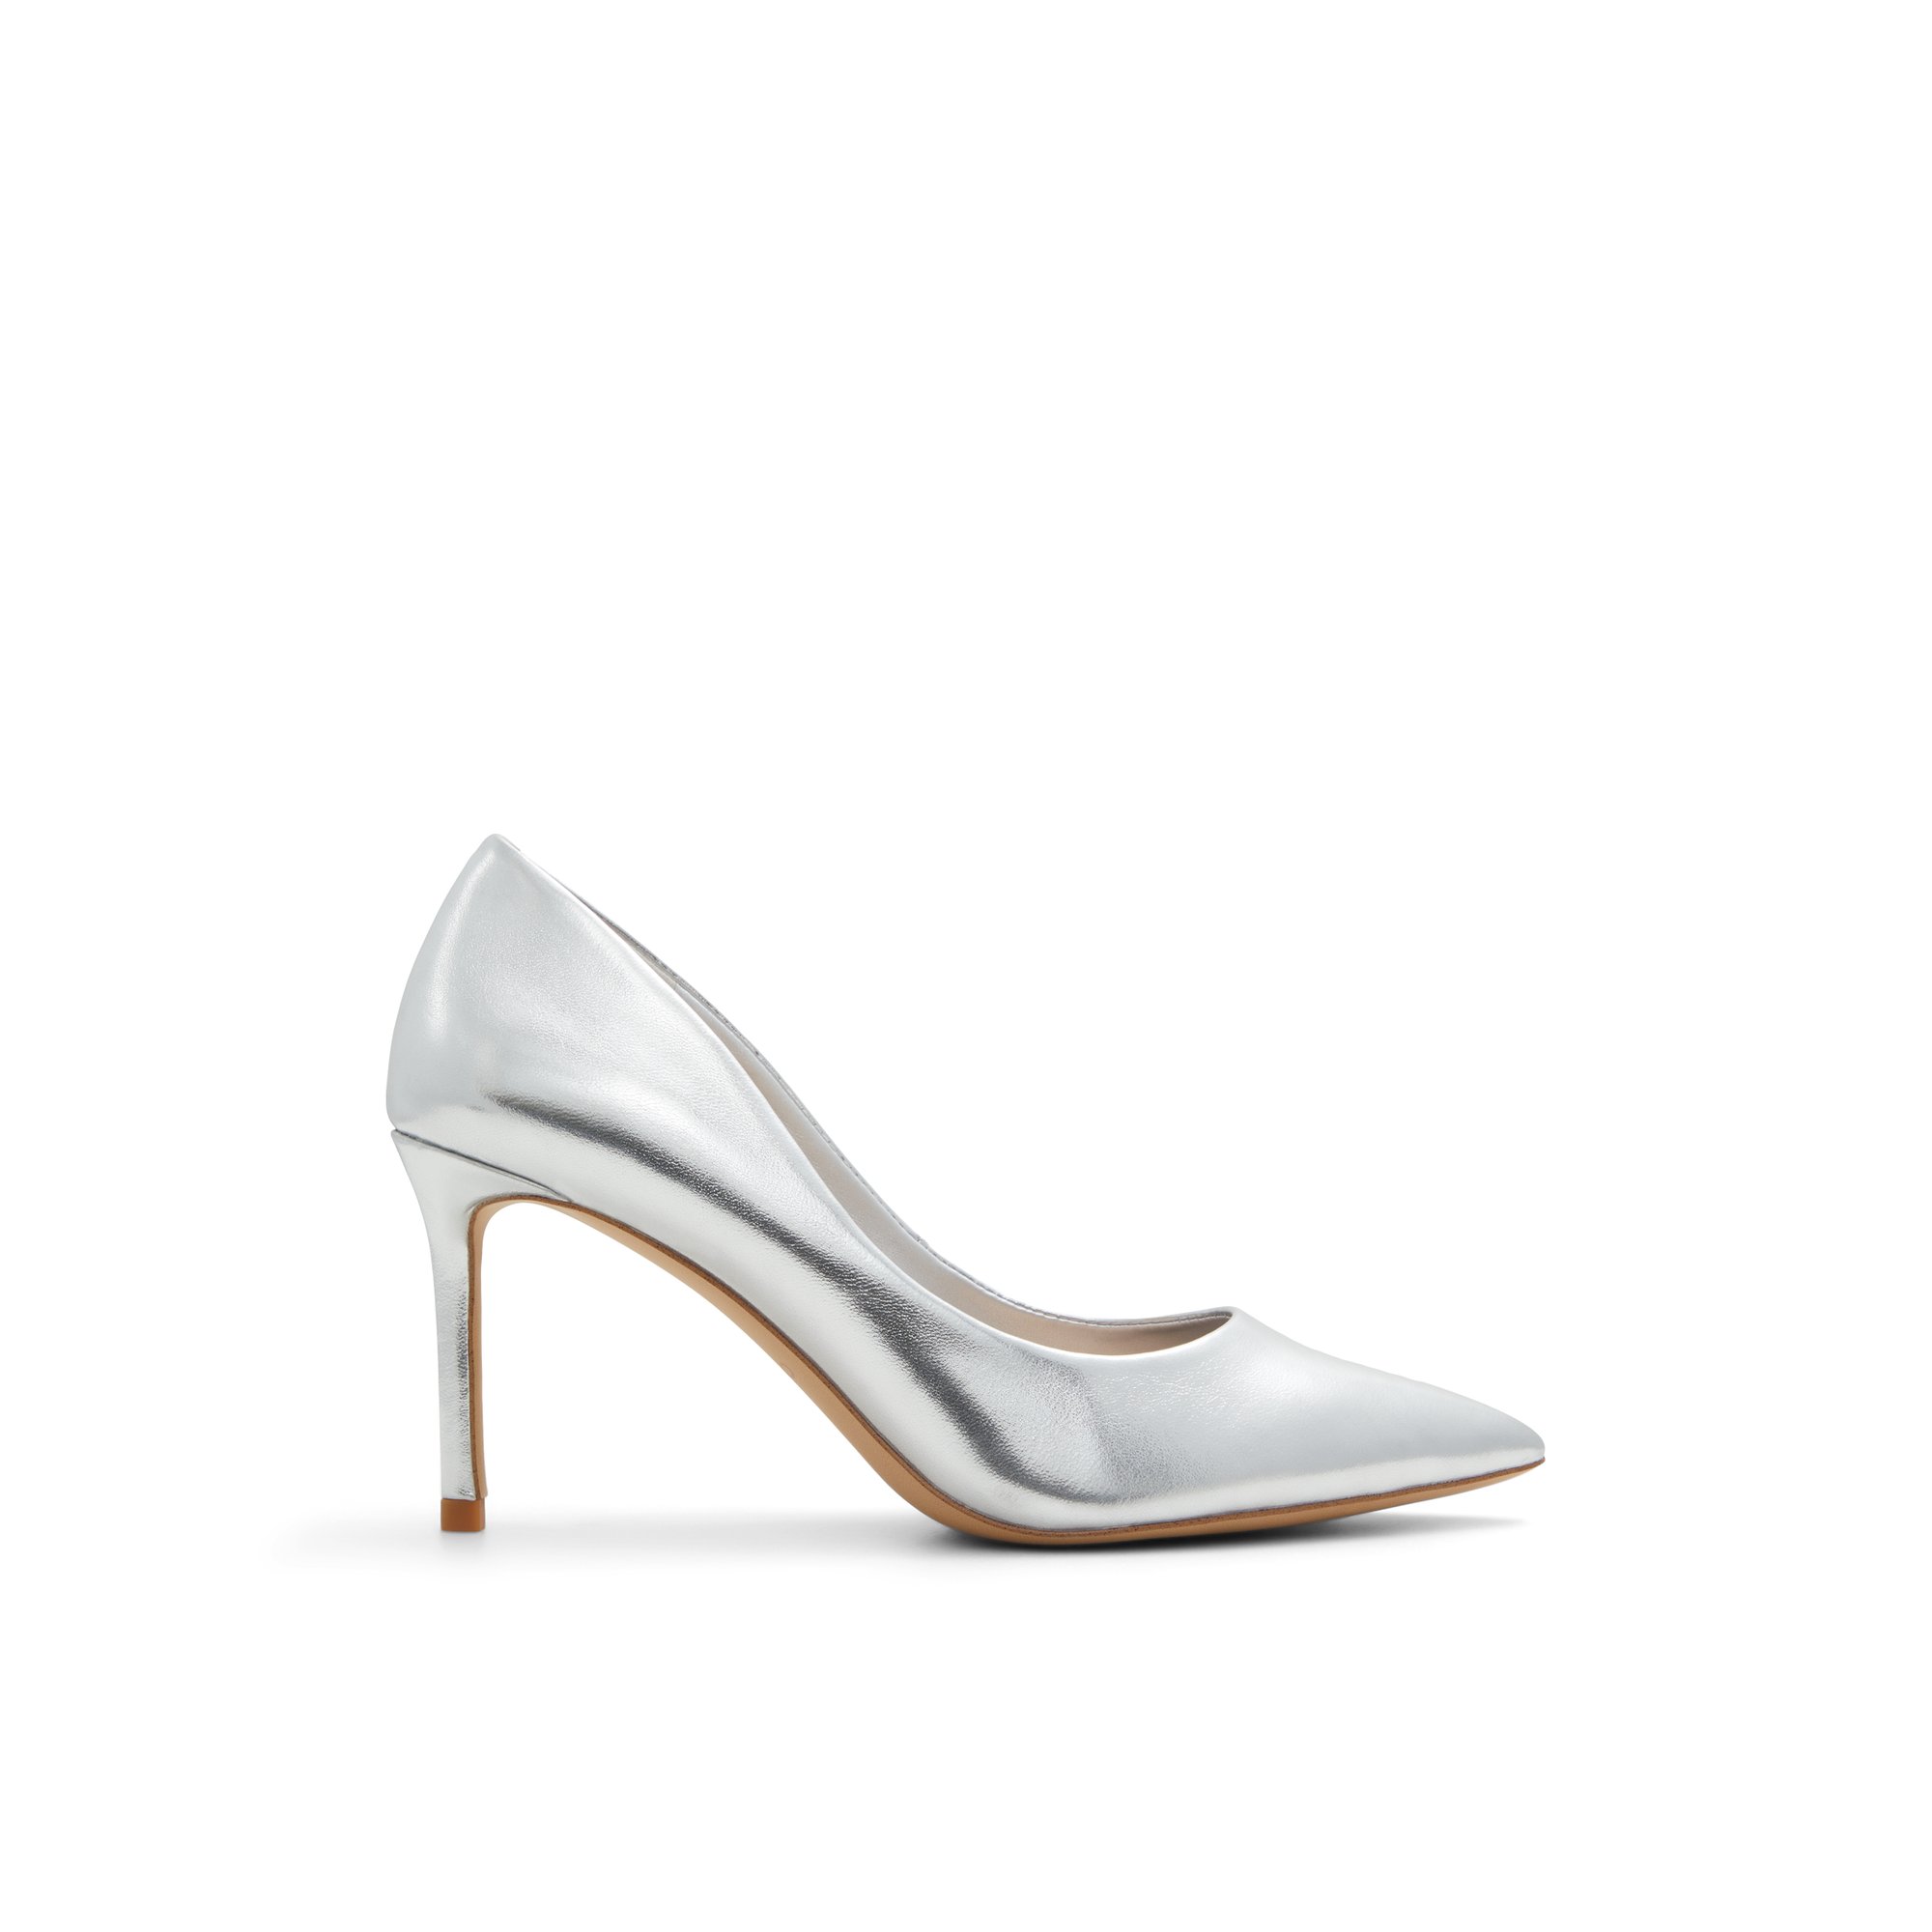 ALDO Stessymid - Women's Heels - Silver